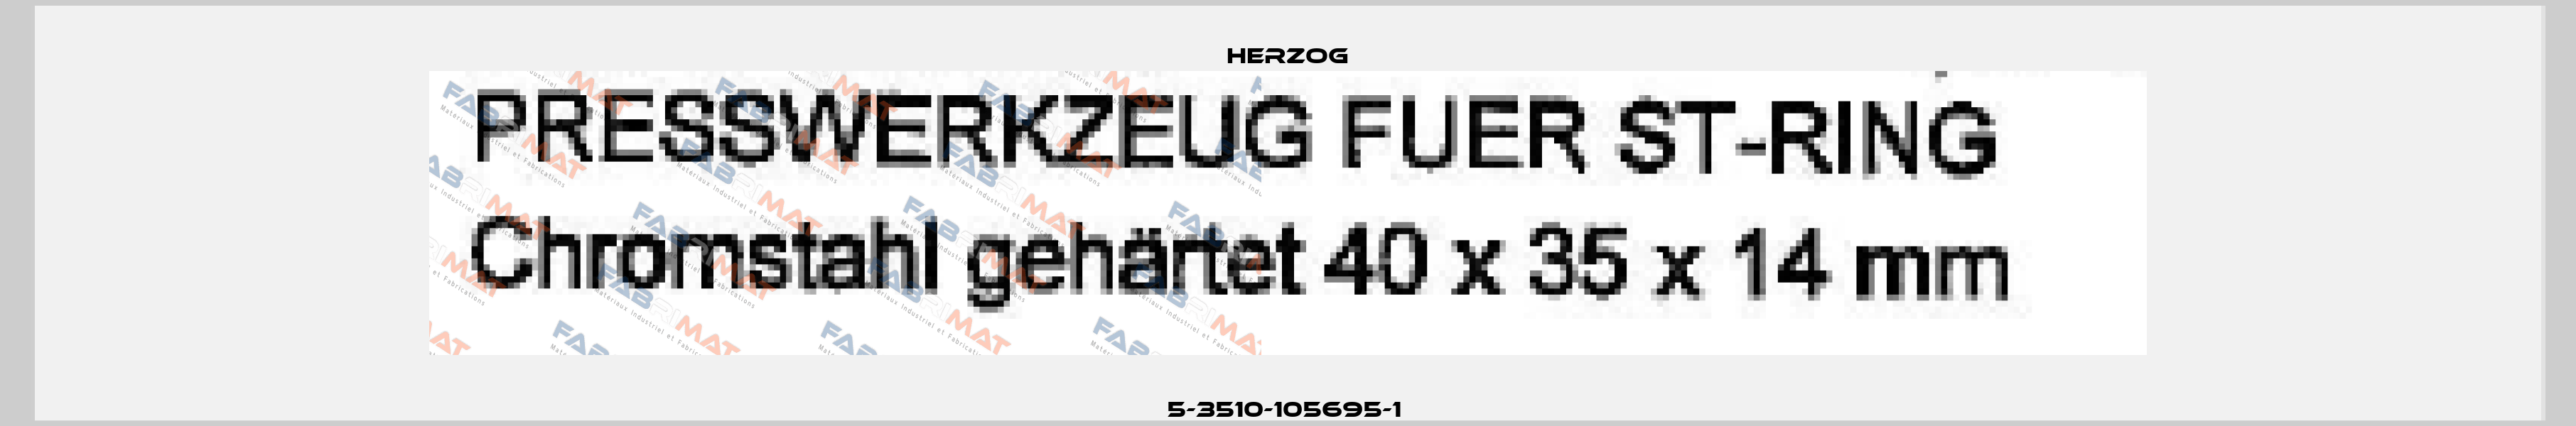 5-3510-105695-1  Herzog